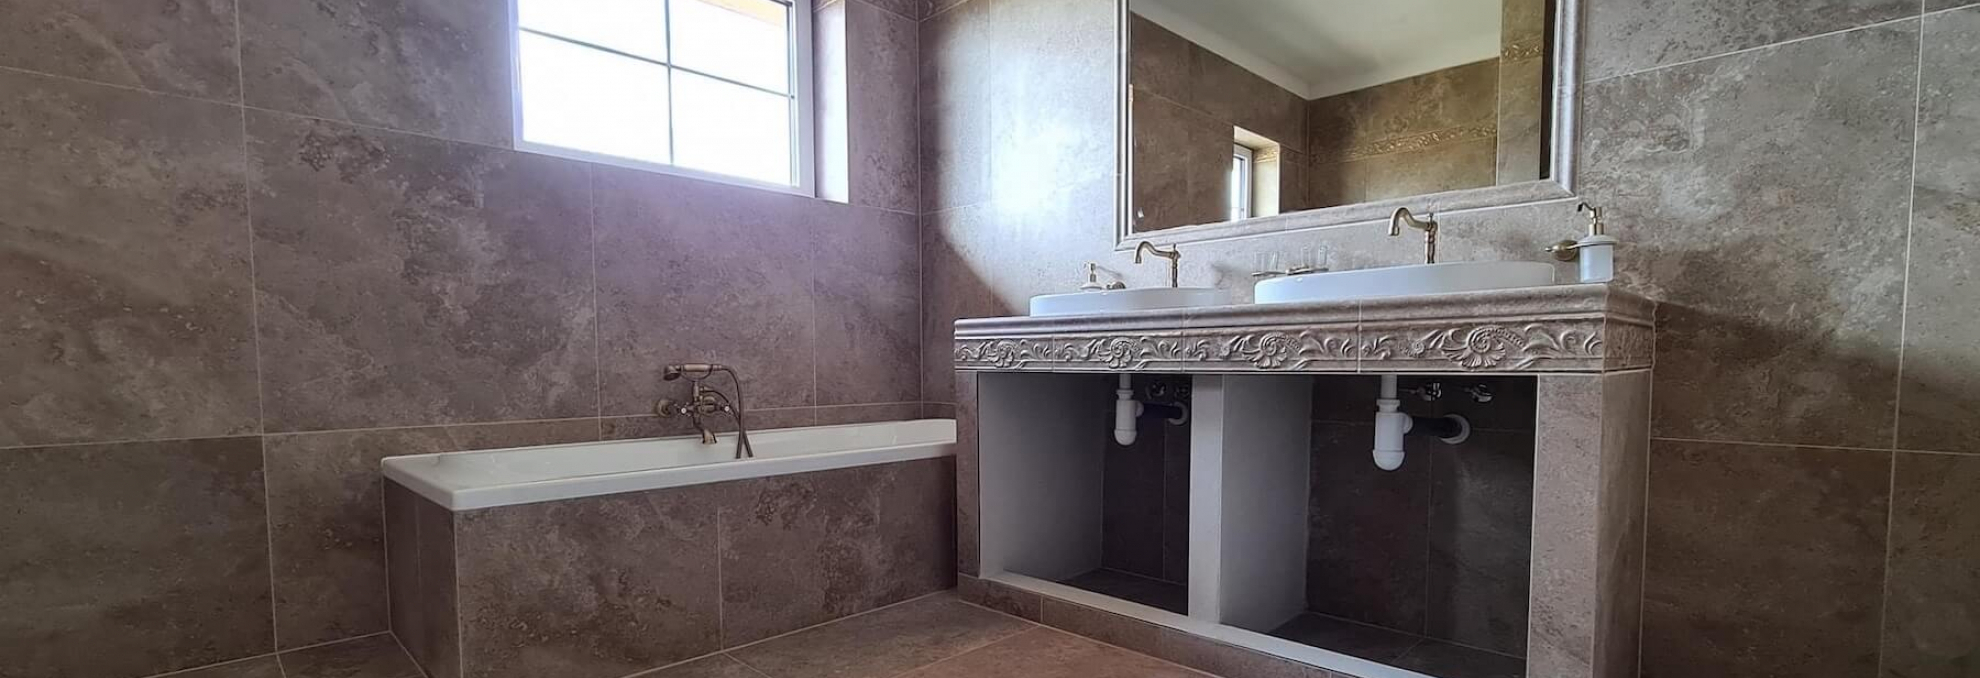 Koupelna v designu kamene